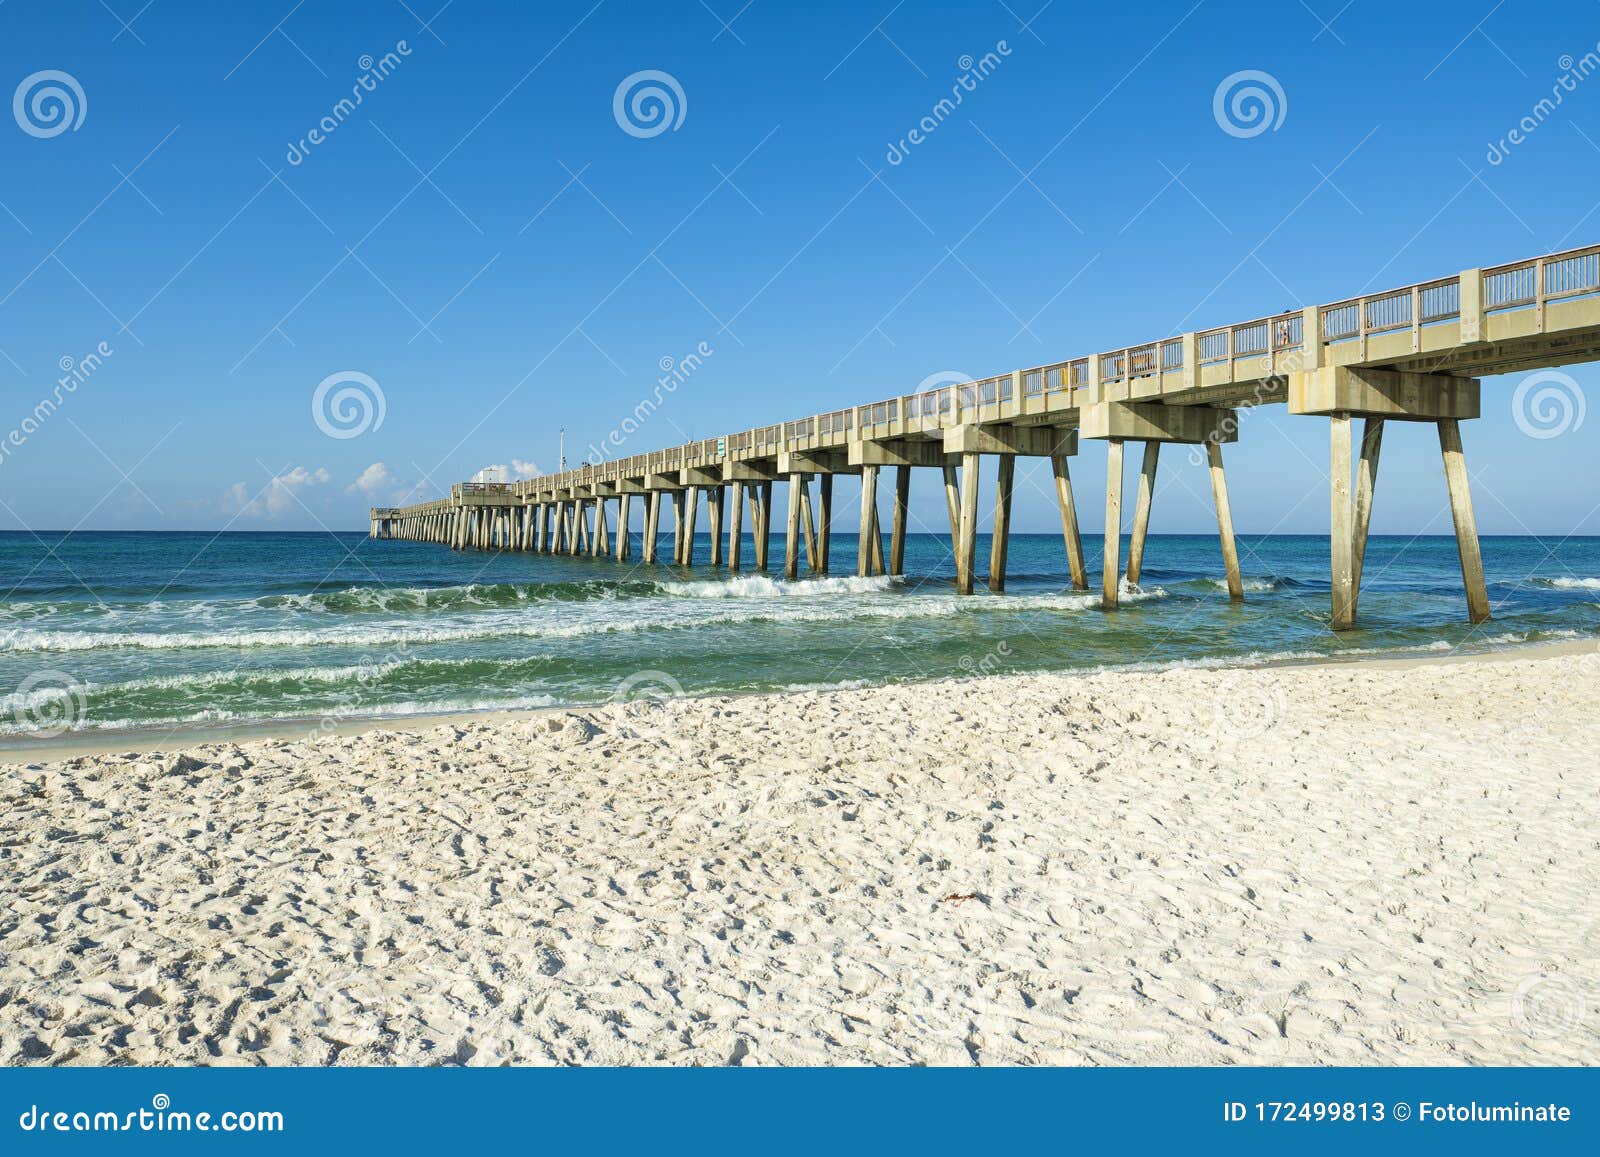 panama city beach pier